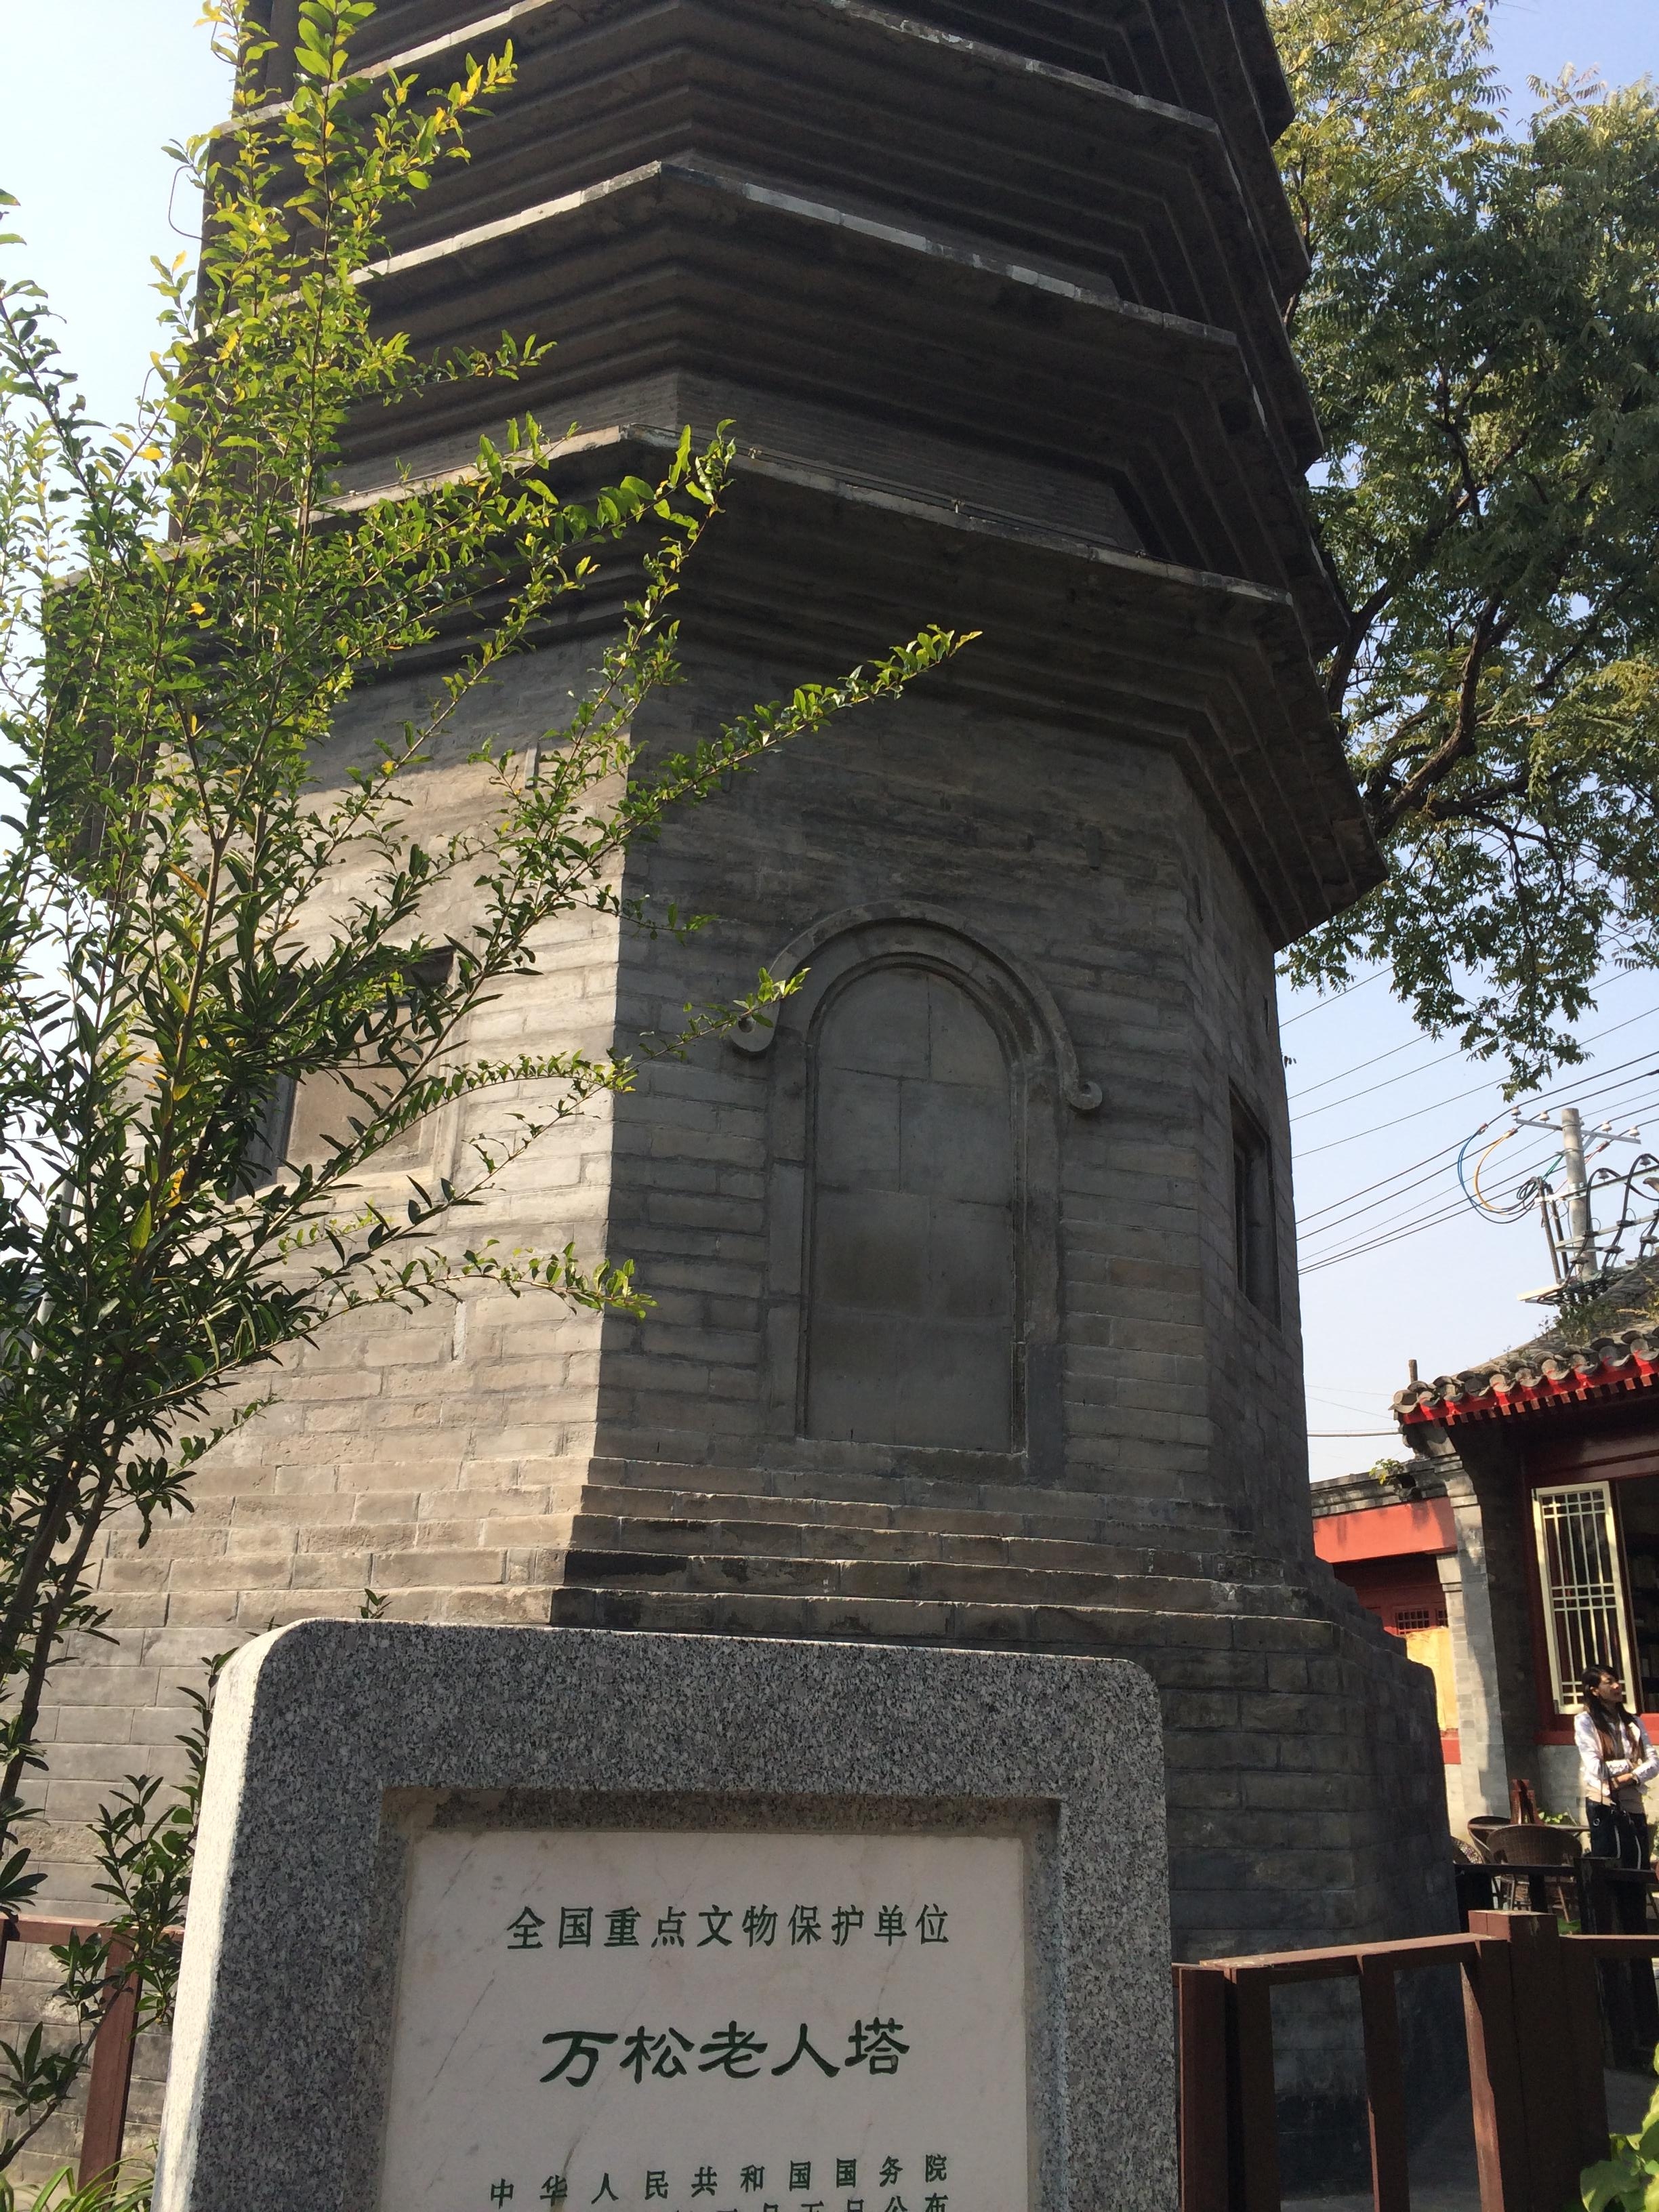 【携程攻略】北京砖塔胡同景点,砖塔胡同是北京最古老的胡同之一.